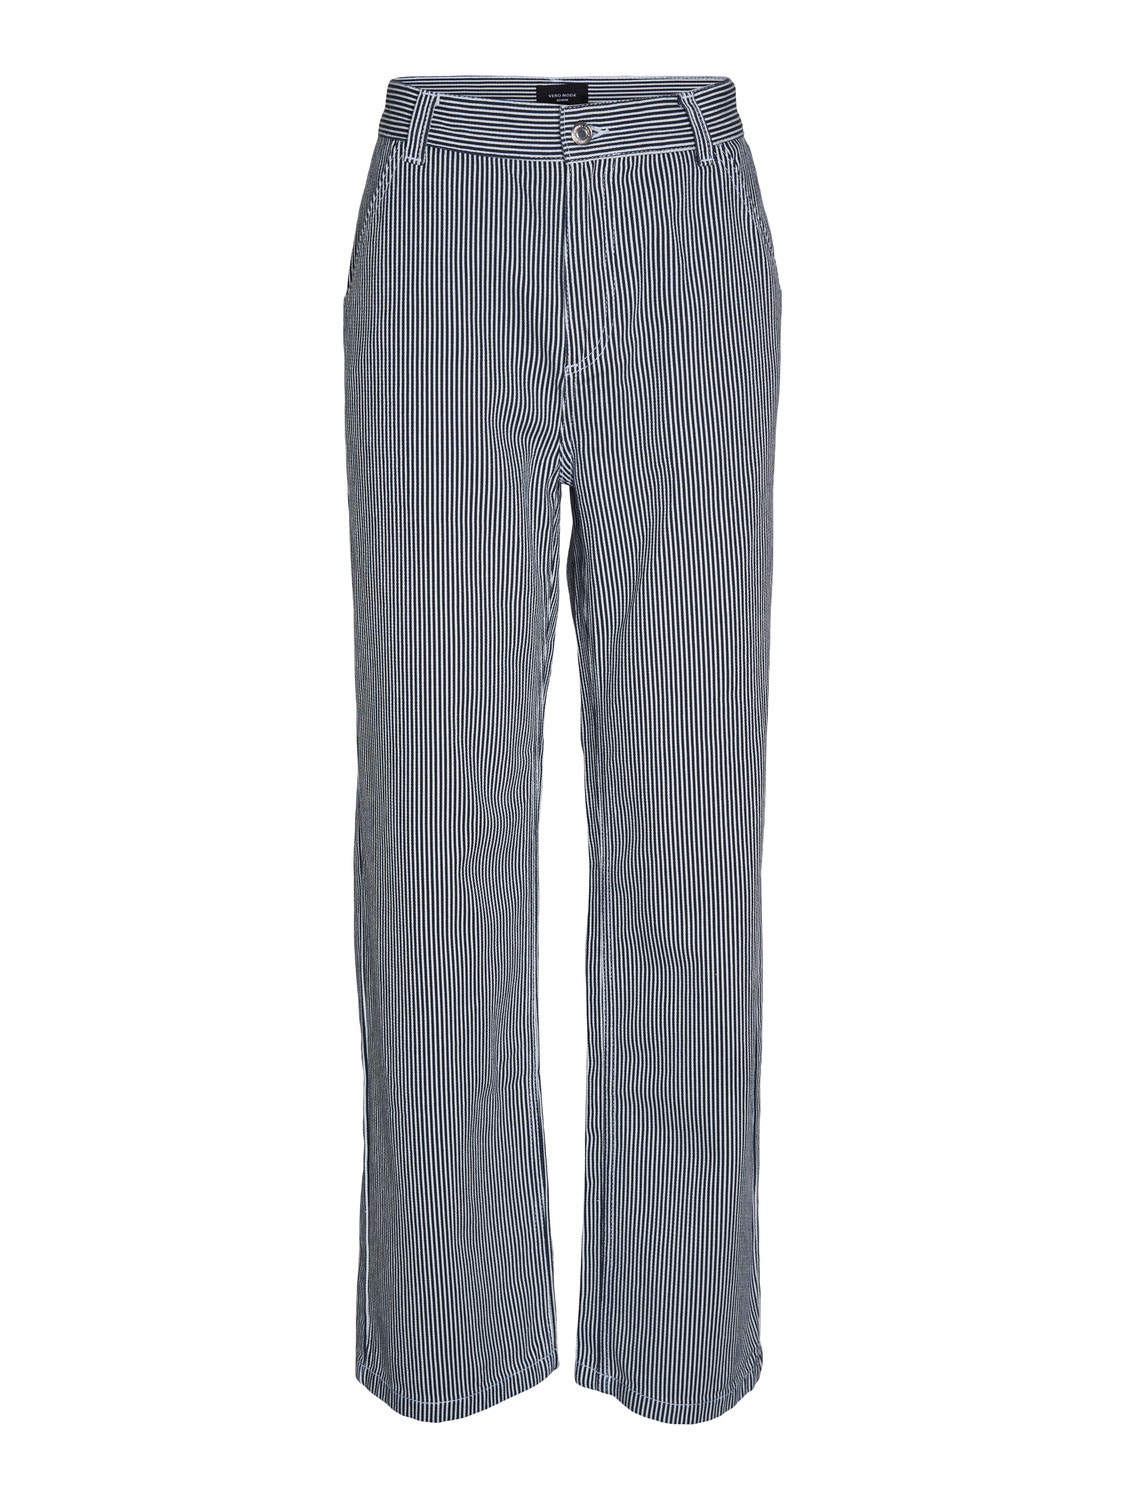 Vero Moda VMMARTHA Loose Fit Jeans -White - 10290052